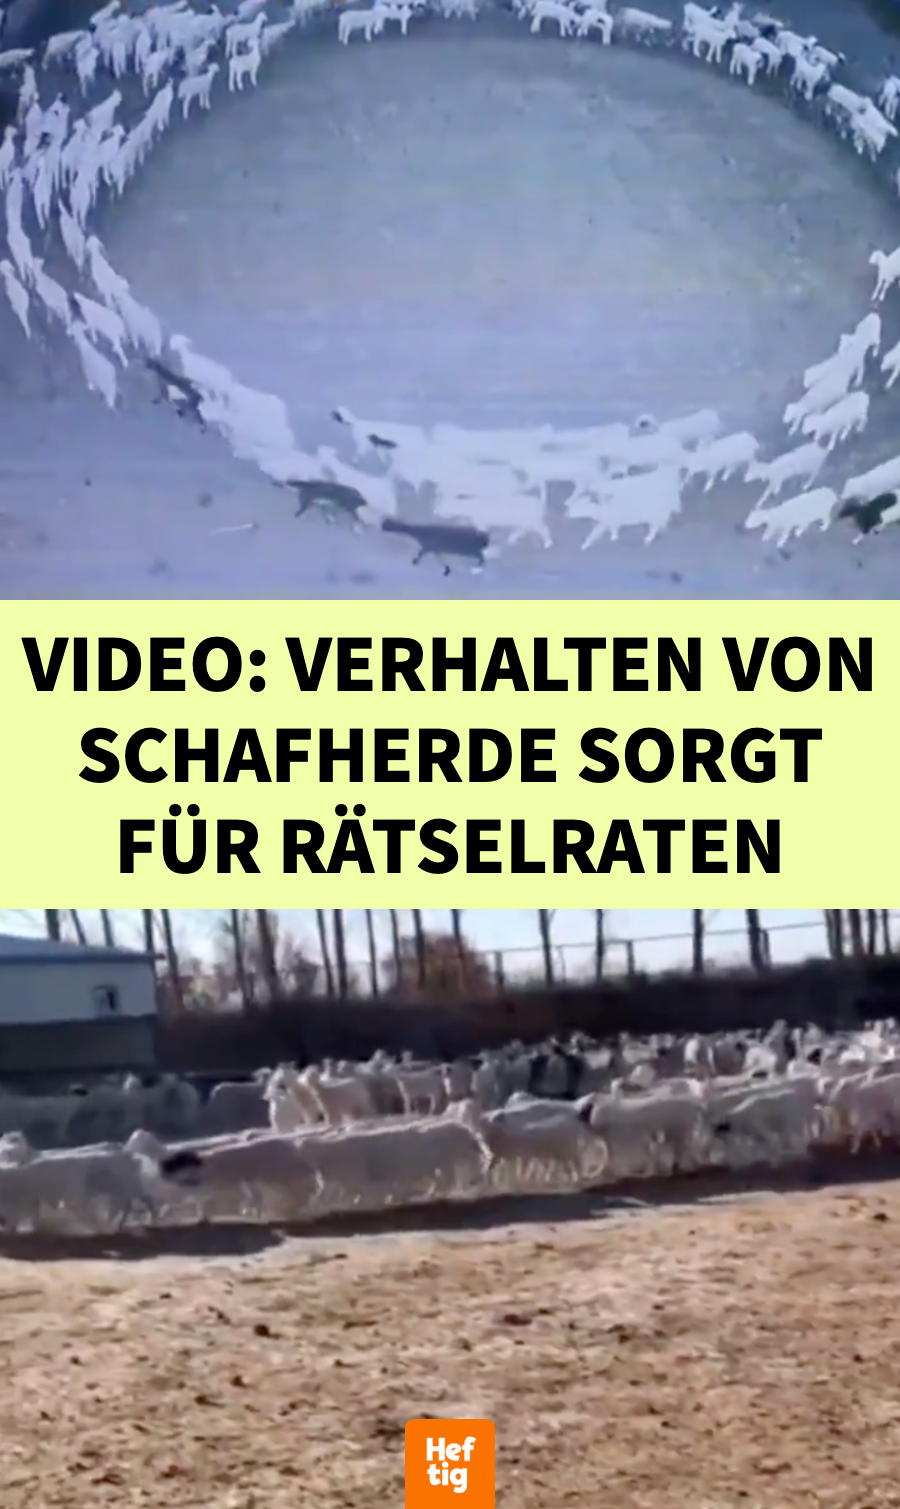 Video: Große Schafherde läuft tagelang im Kreis